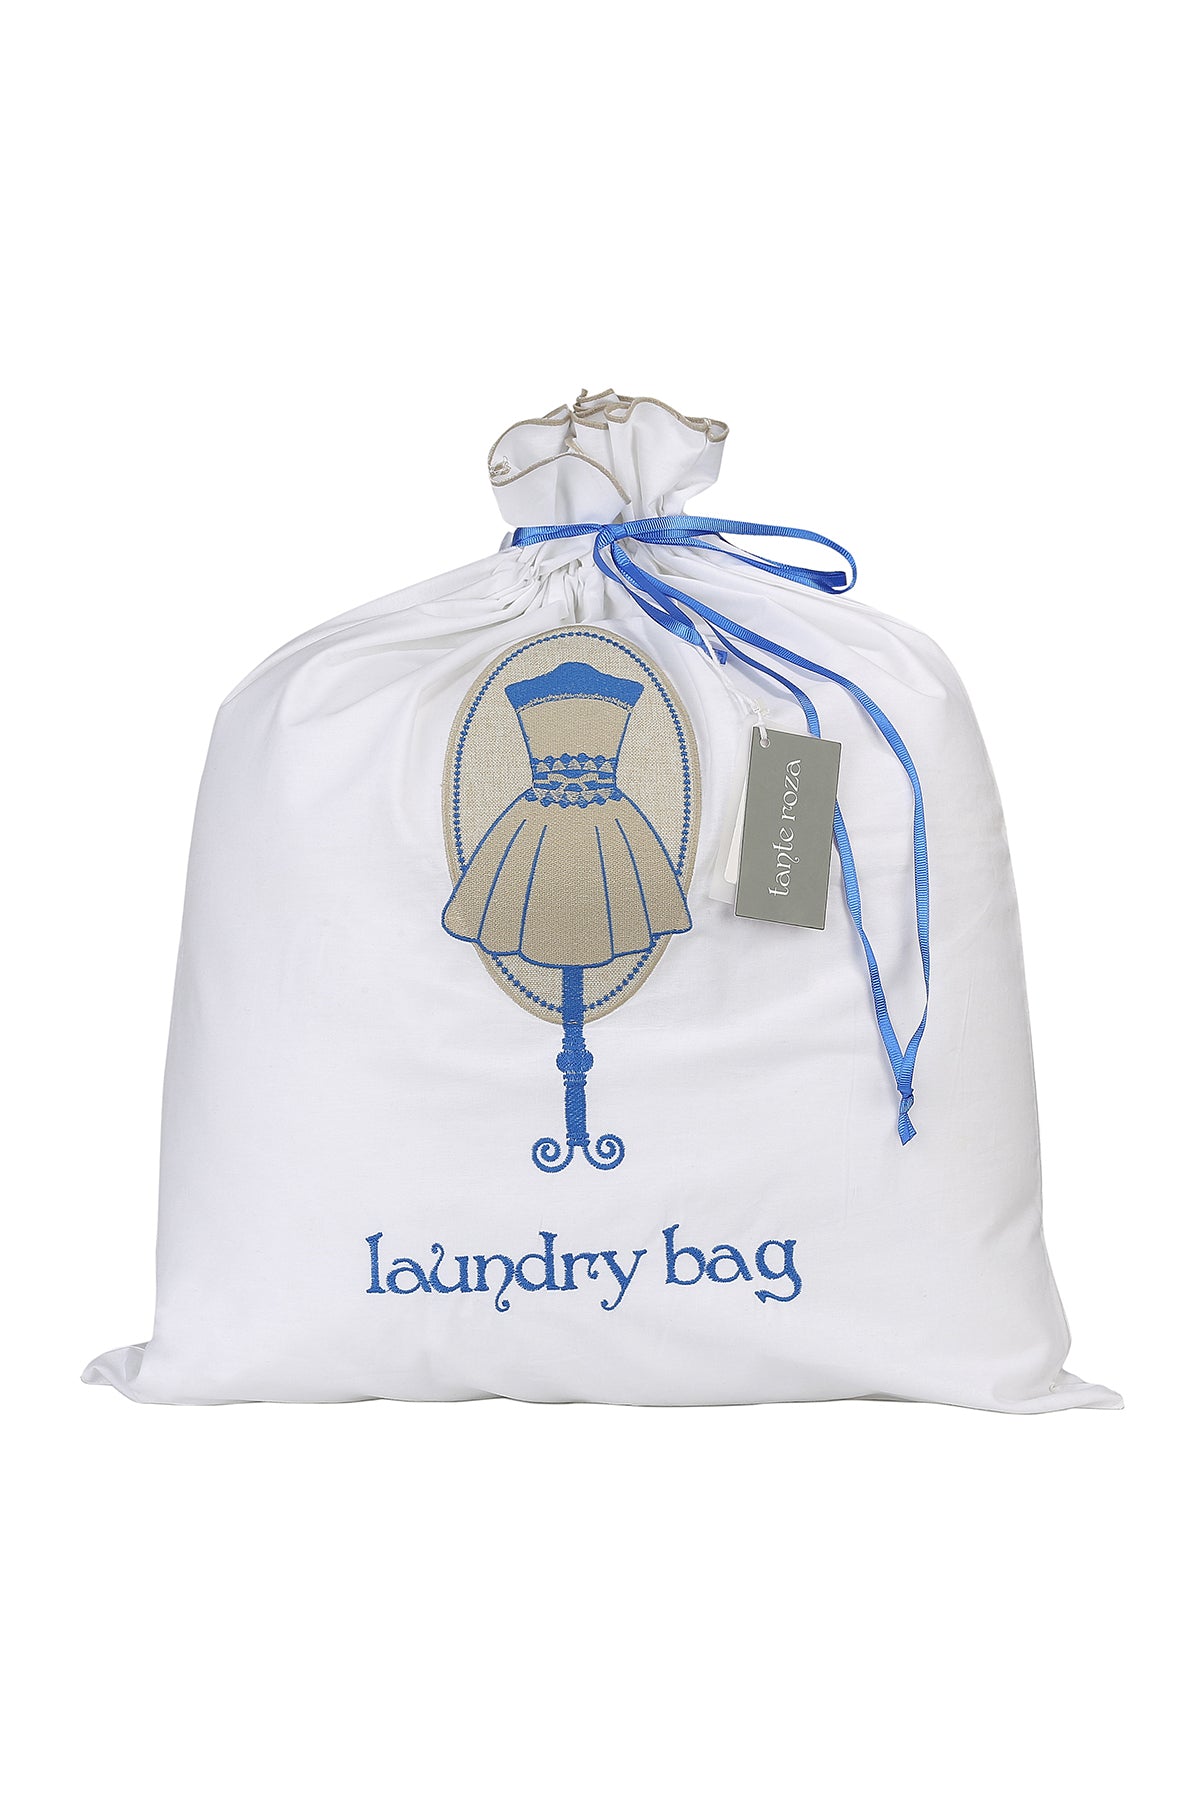 Cotton Laundry Bag Blue